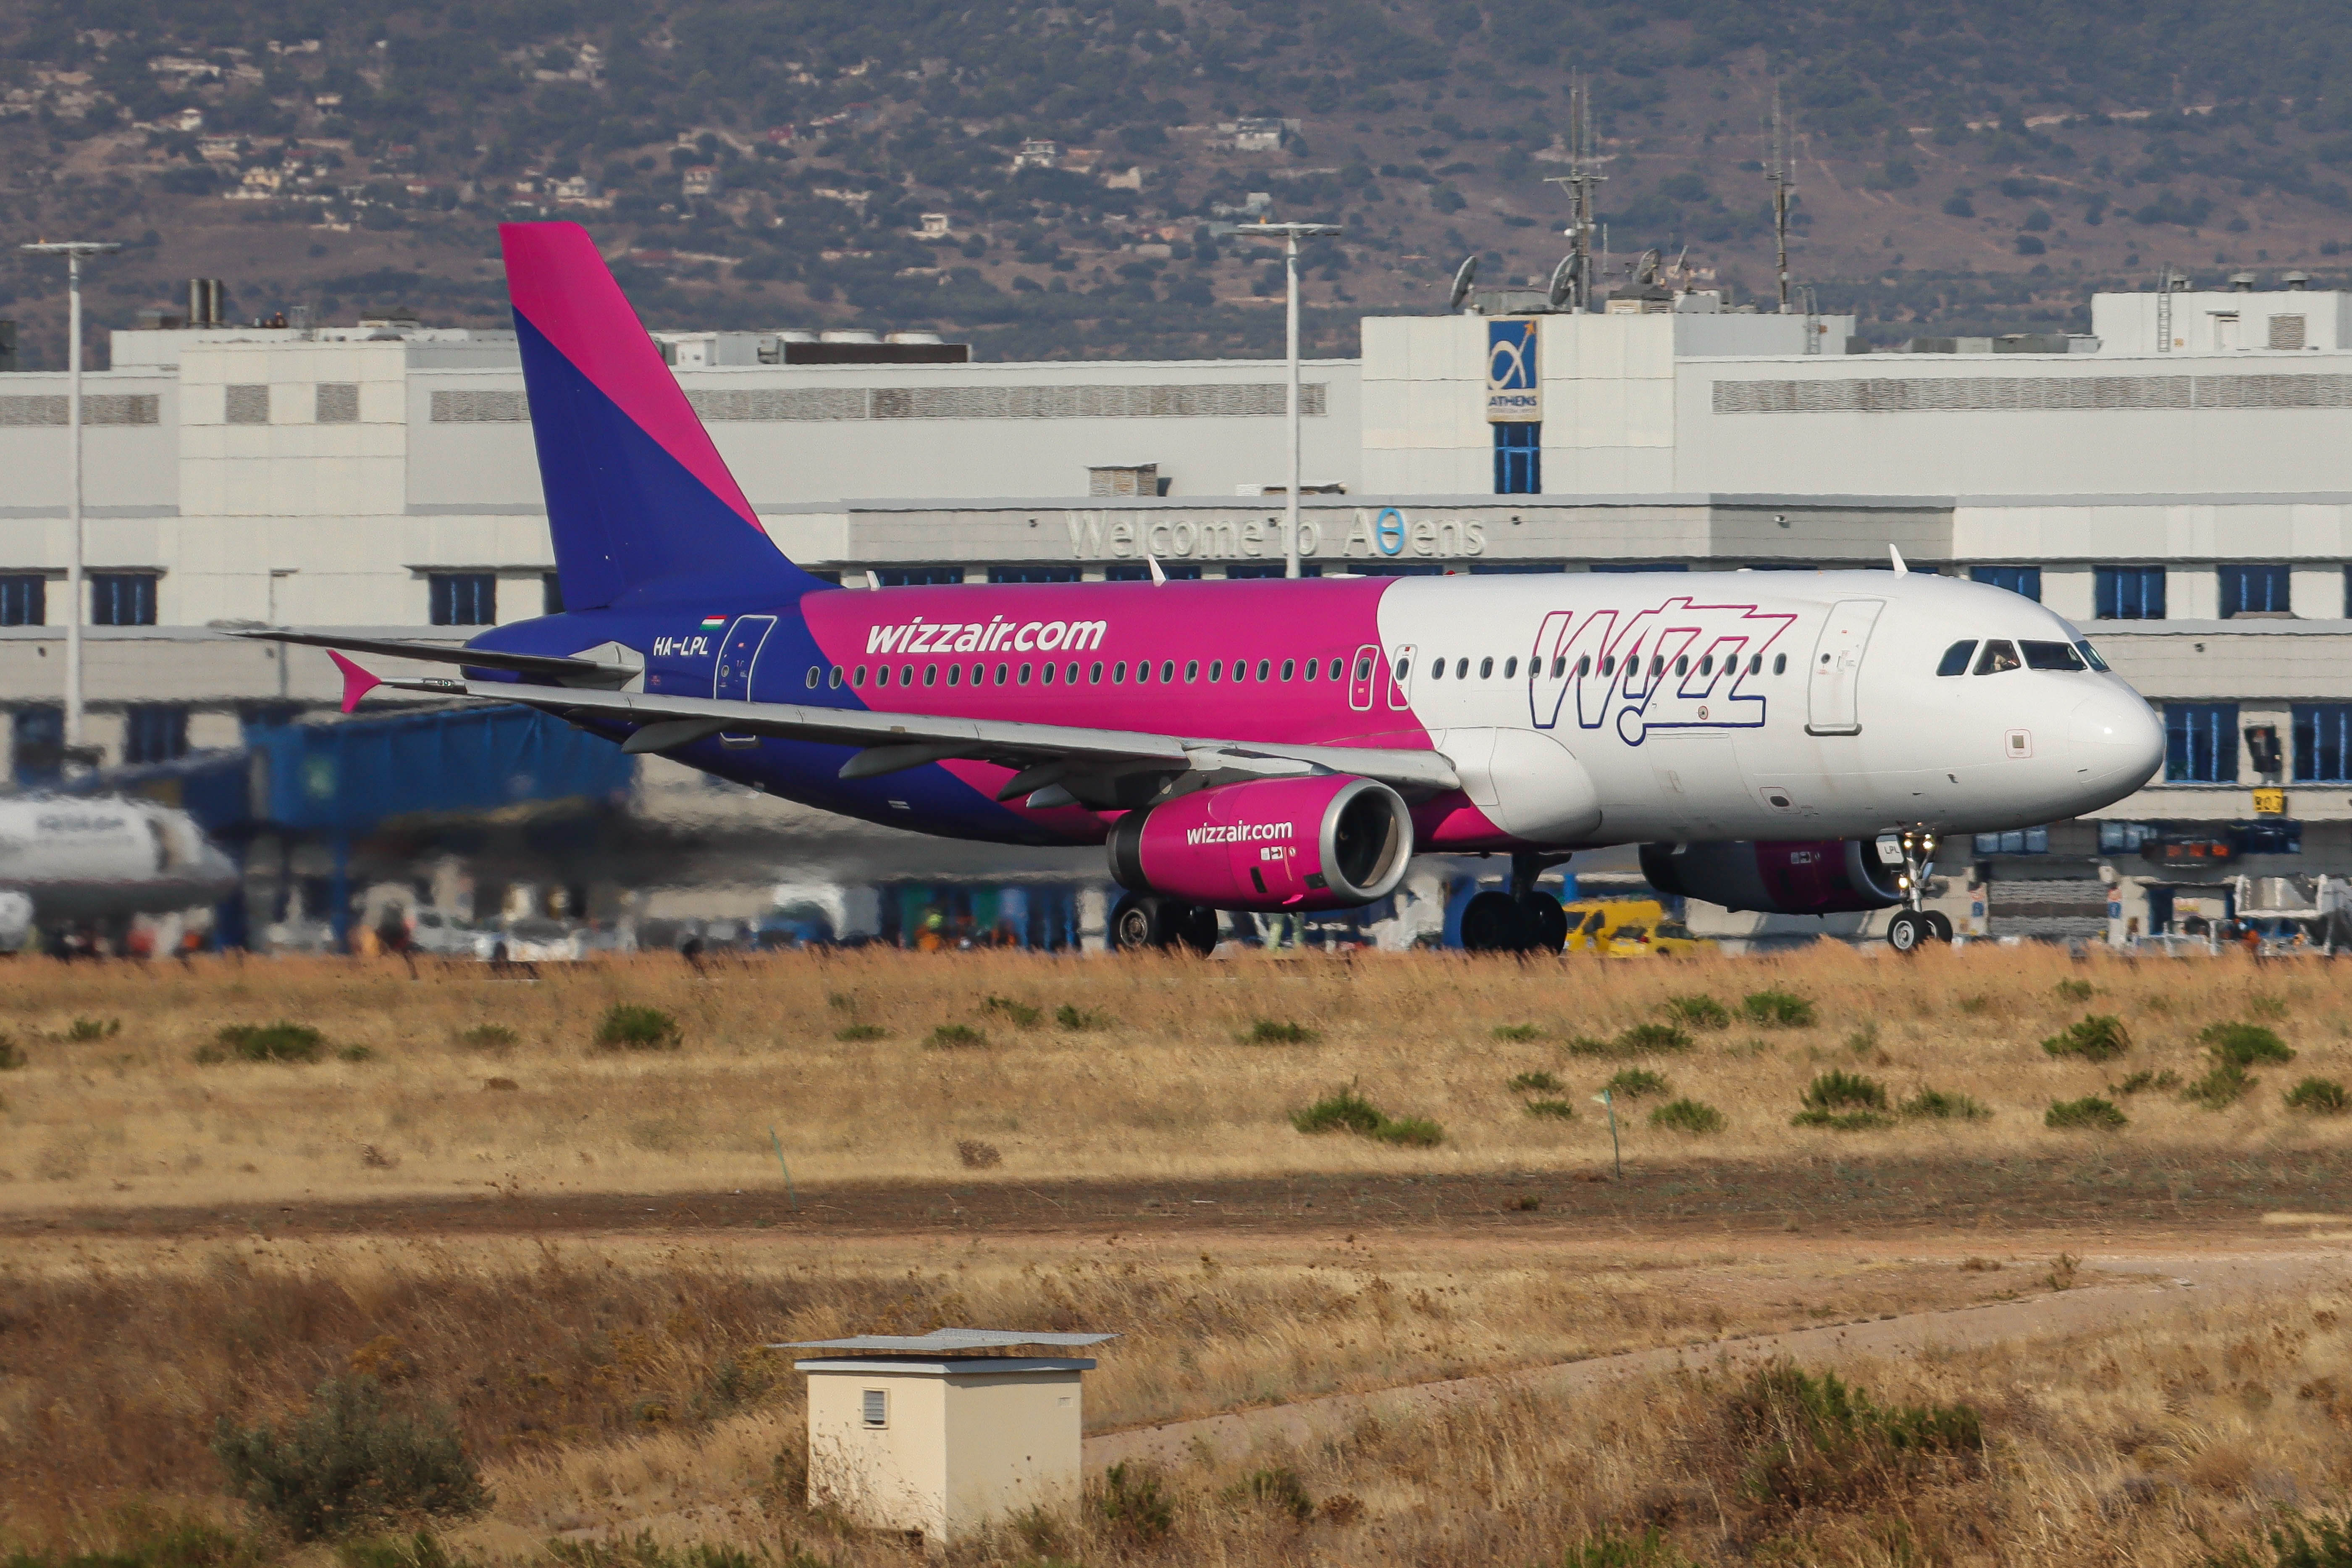 Bombafenyegetés miatt Ferihegyen kellett leszállnia a Wizz Air egy járatának